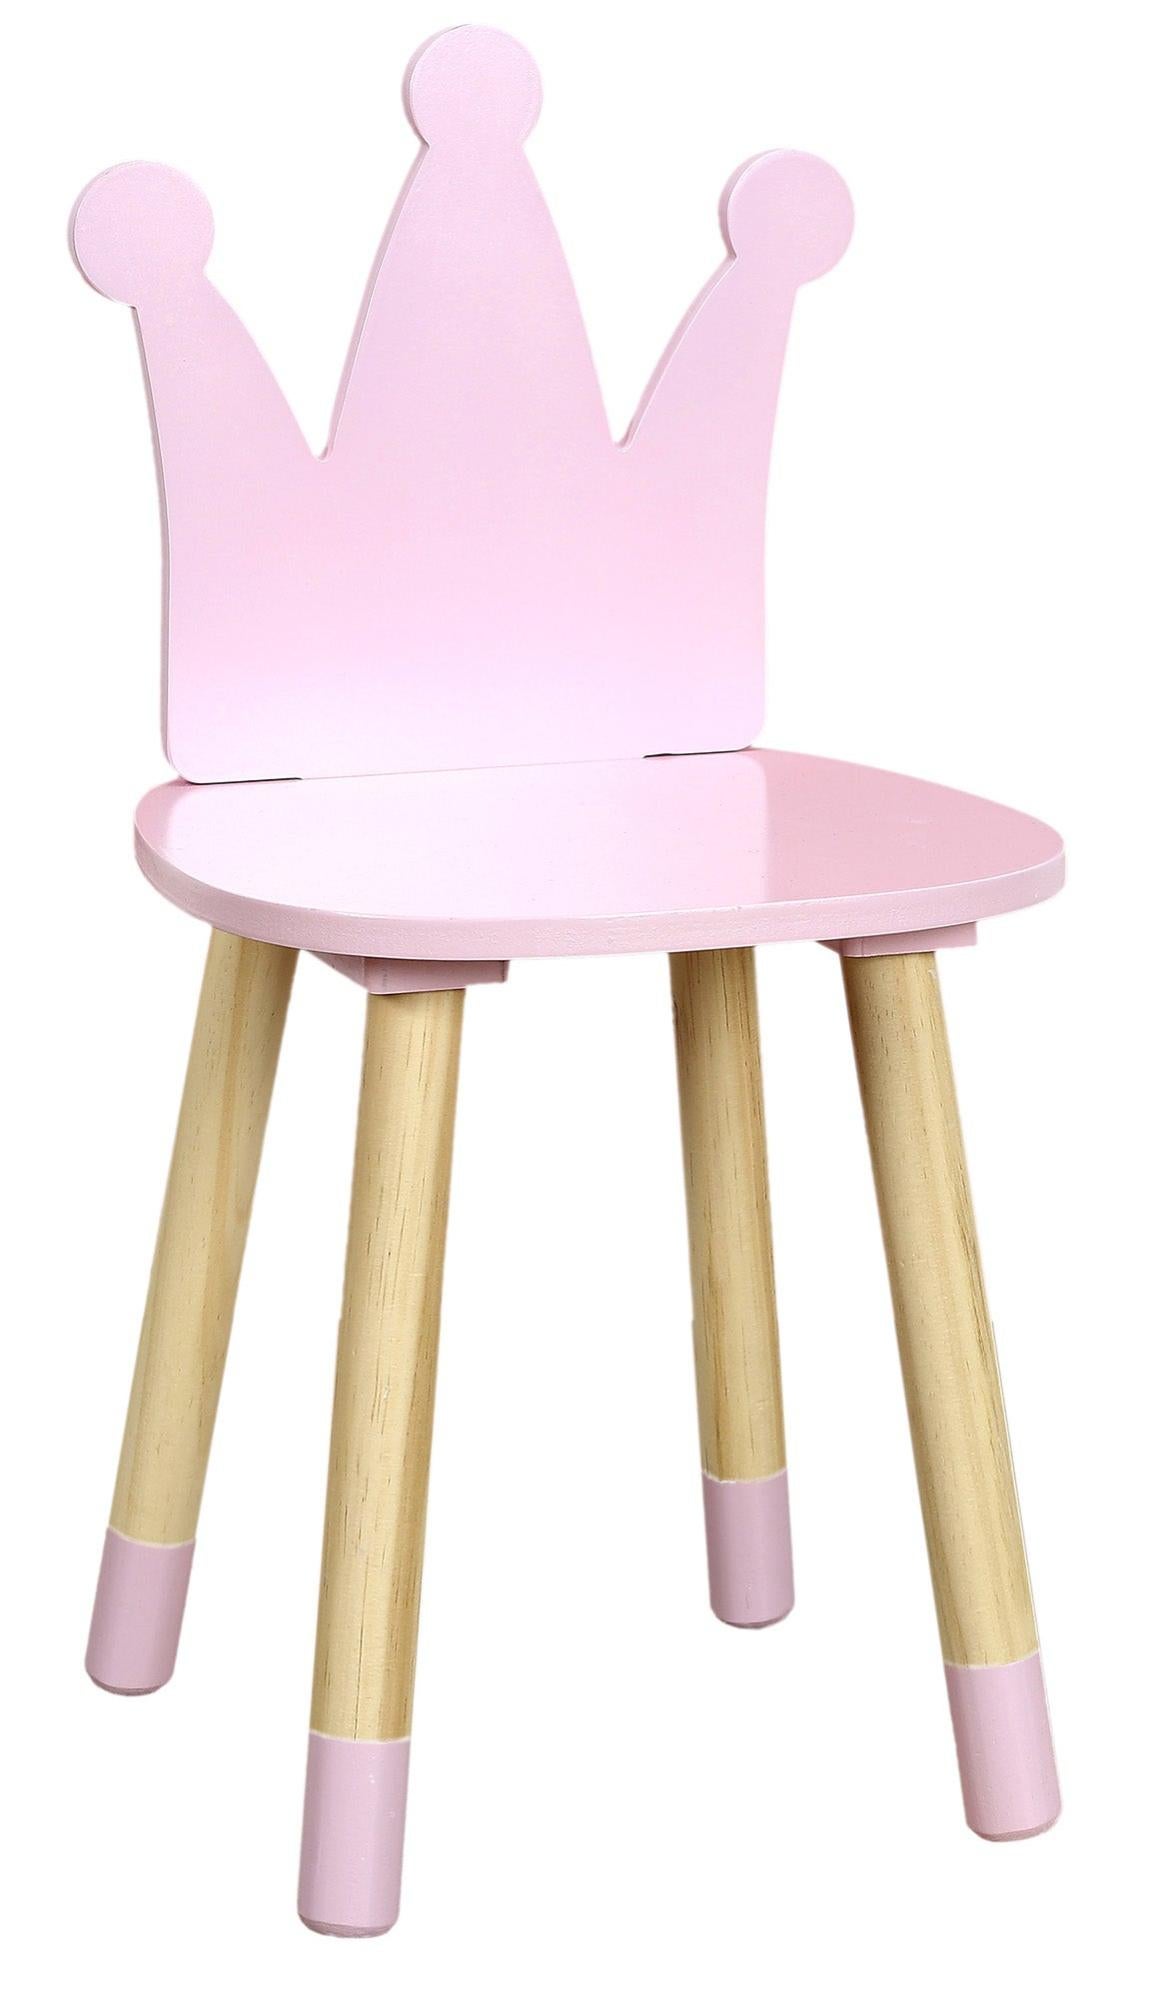 Silla infantil queen de madera color rosa de 54x27x28cm